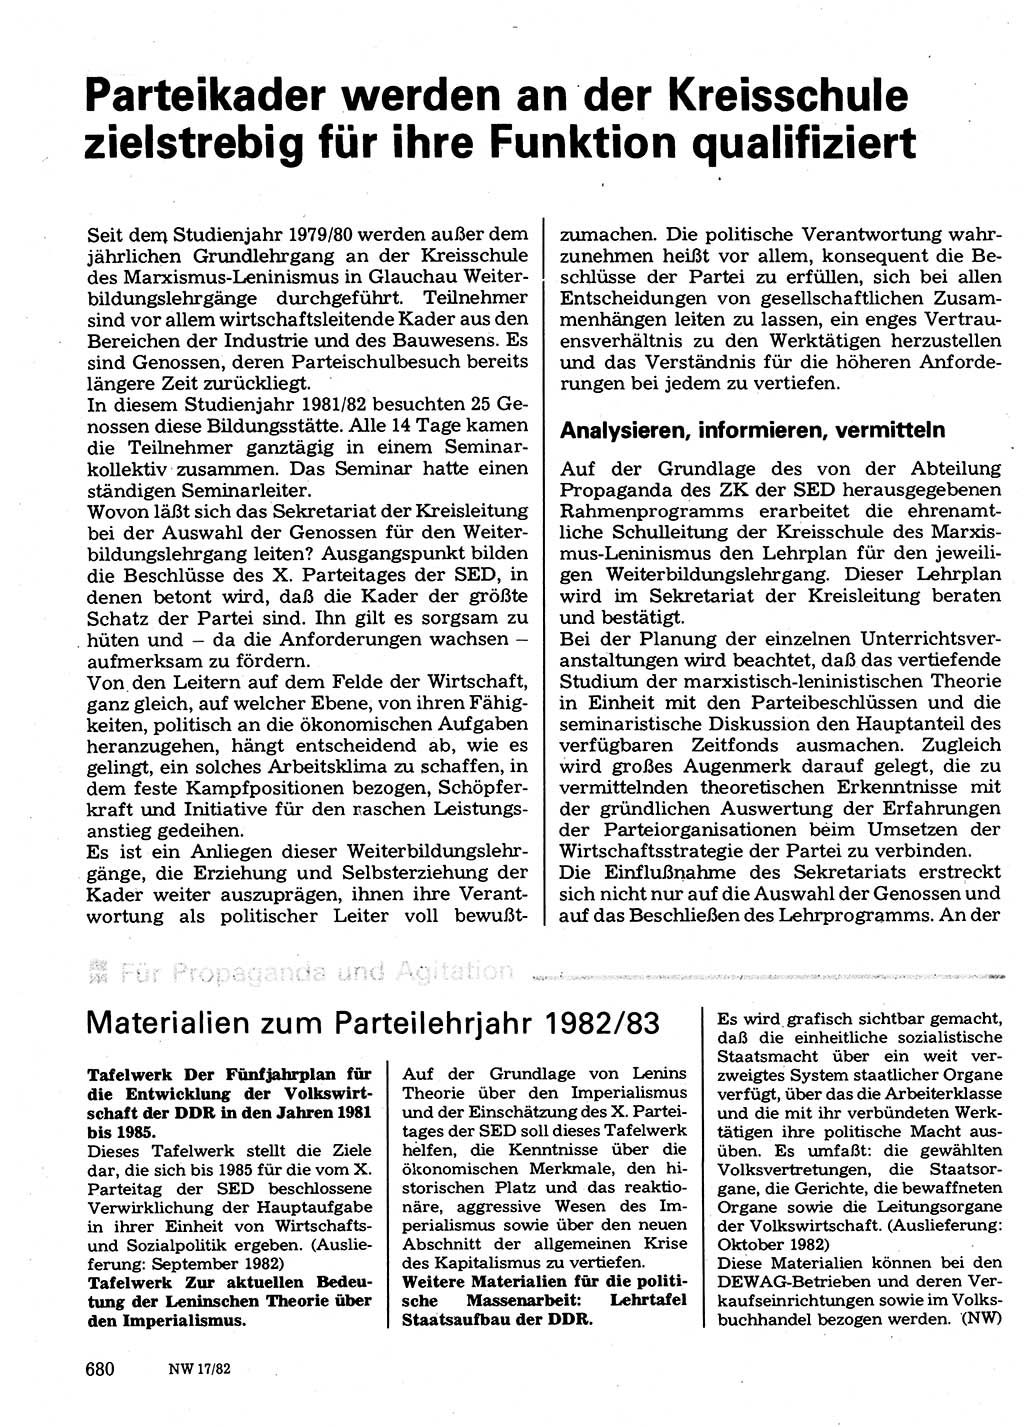 Neuer Weg (NW), Organ des Zentralkomitees (ZK) der SED (Sozialistische Einheitspartei Deutschlands) für Fragen des Parteilebens, 37. Jahrgang [Deutsche Demokratische Republik (DDR)] 1982, Seite 680 (NW ZK SED DDR 1982, S. 680)